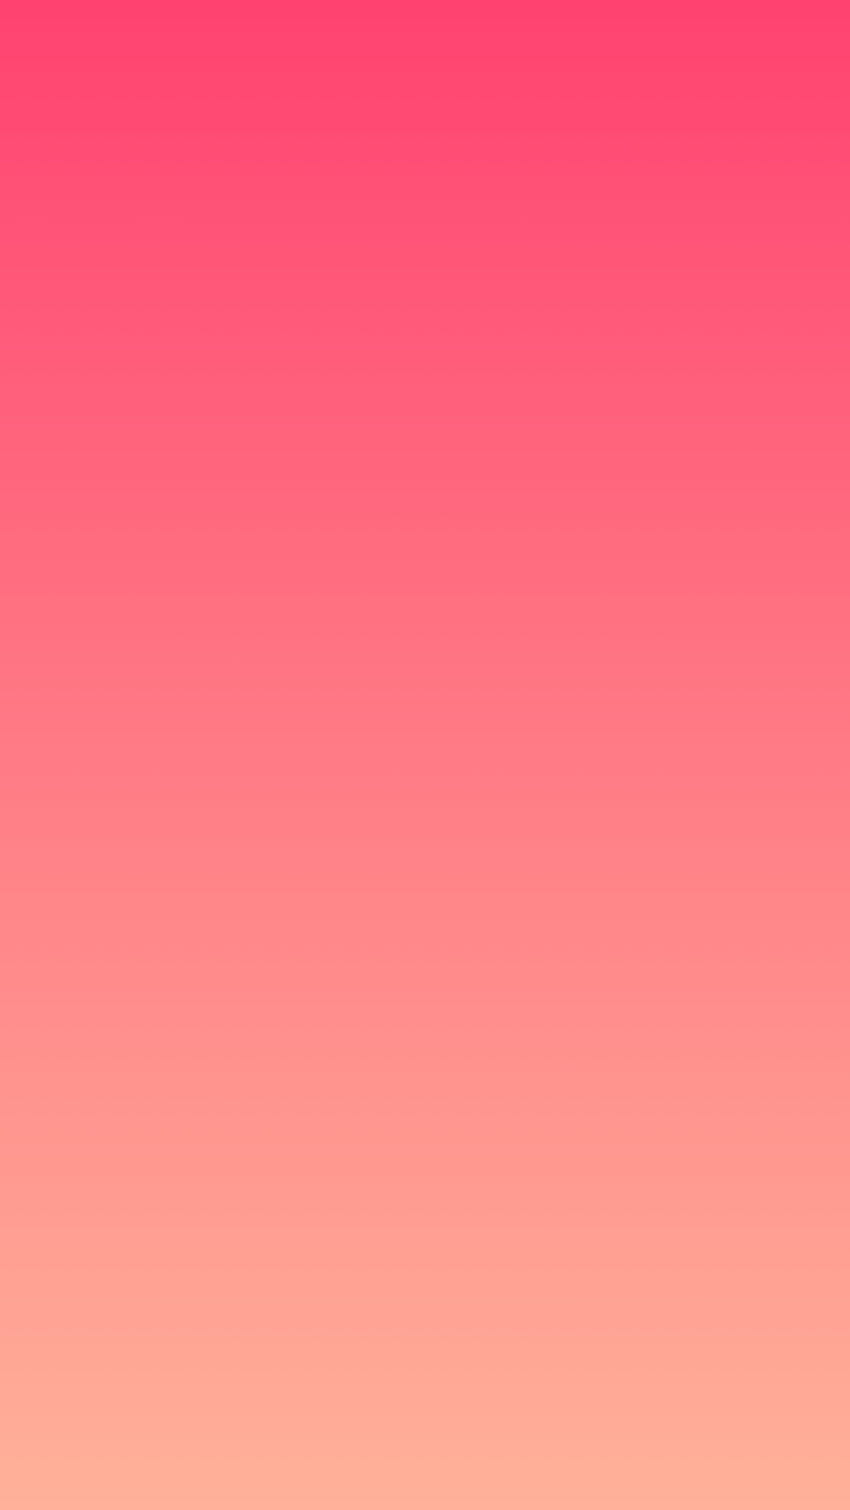 Rosa coral, color coral fondo de pantalla del teléfono